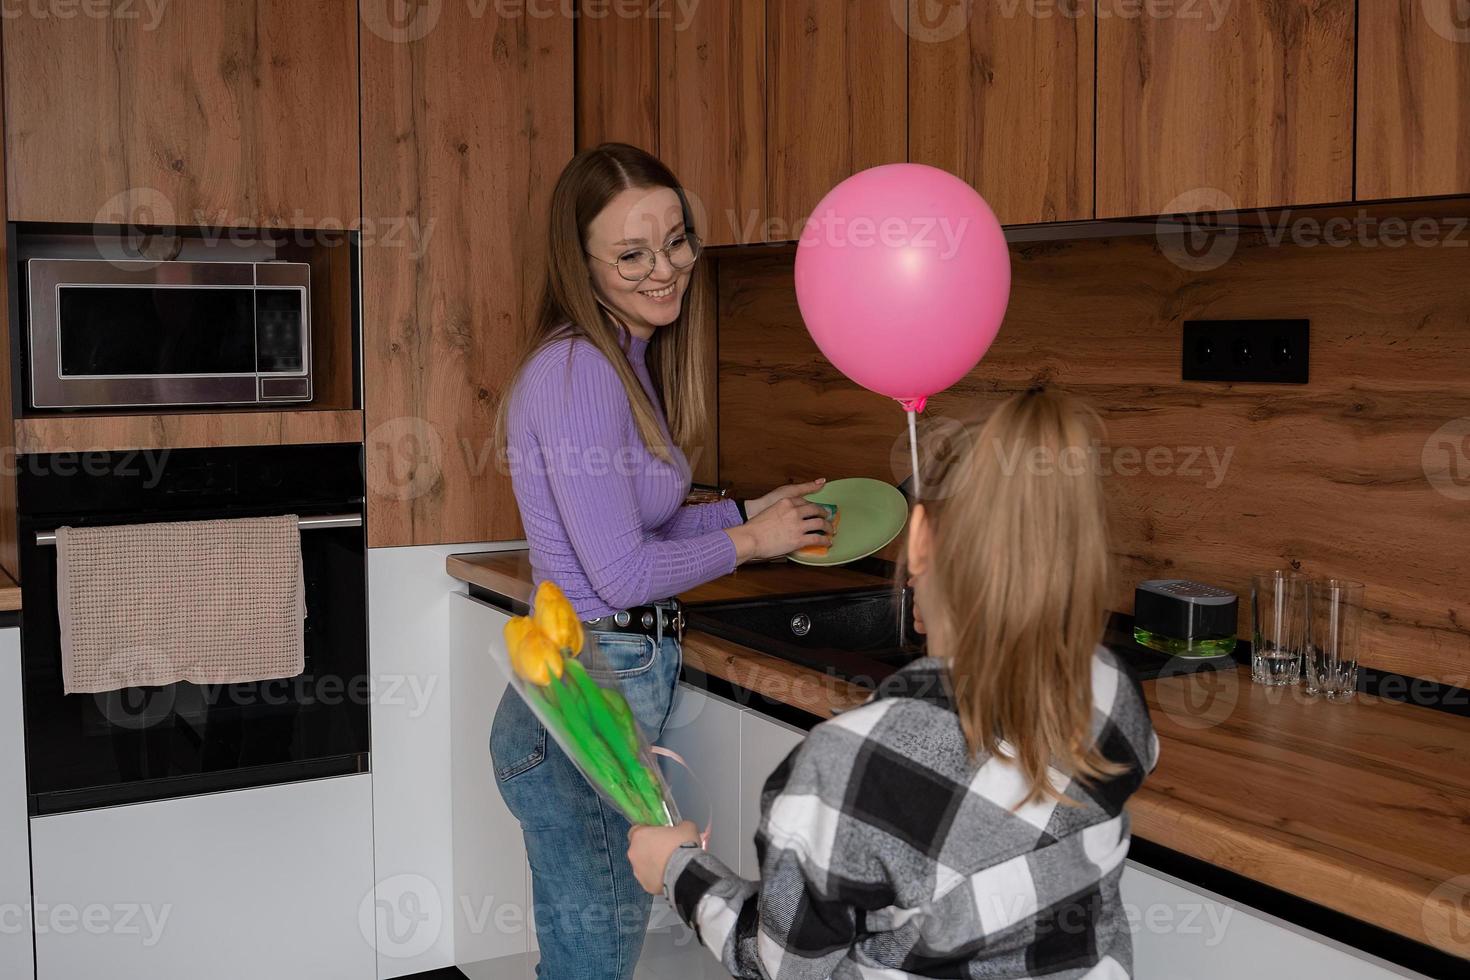 de dochter feliciteert haar moeder Aan moeder dag, geeft haar een ballon en bloemen. de vrouw wast de gerechten en is bezig Bij deze tijd met huishouden klusjes. foto